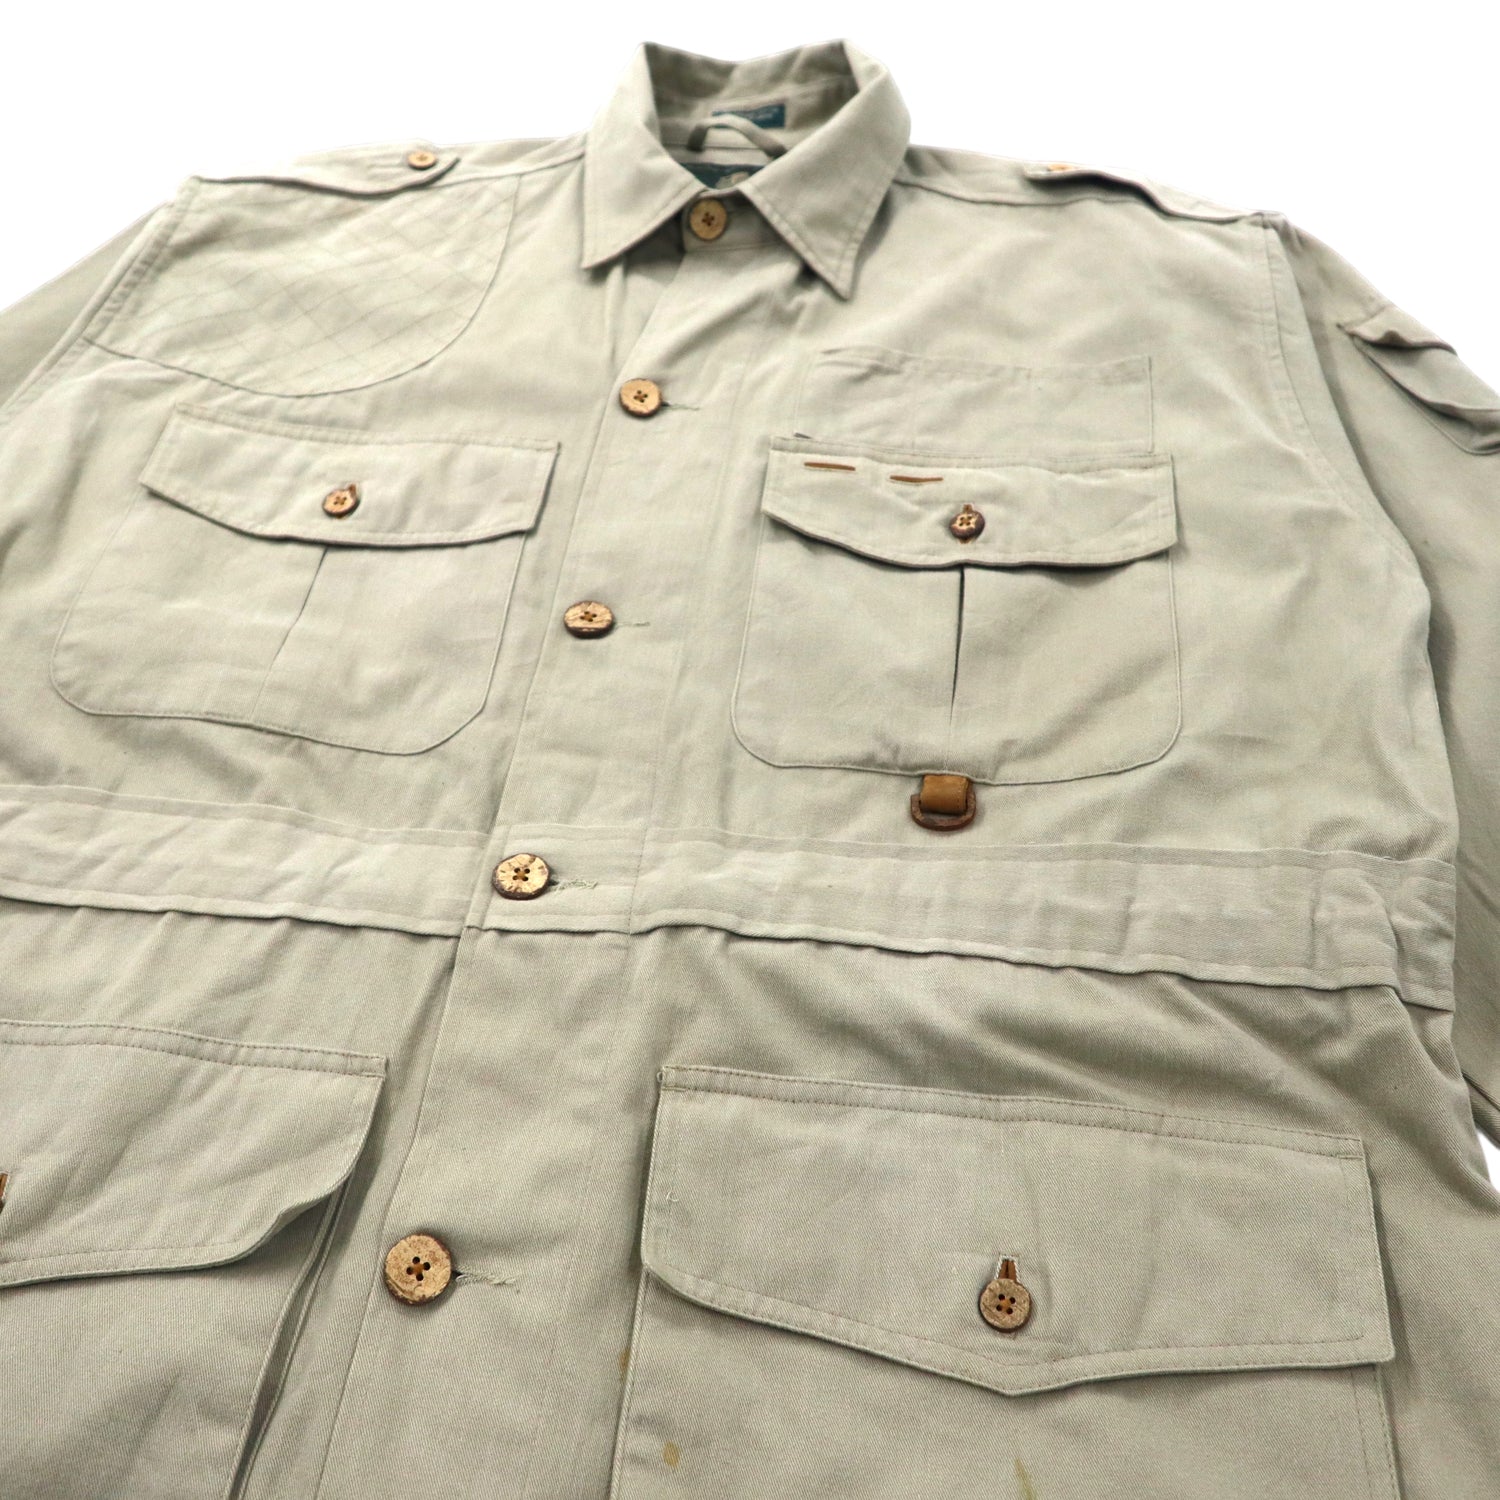 Orvis Safari jacket　Size L